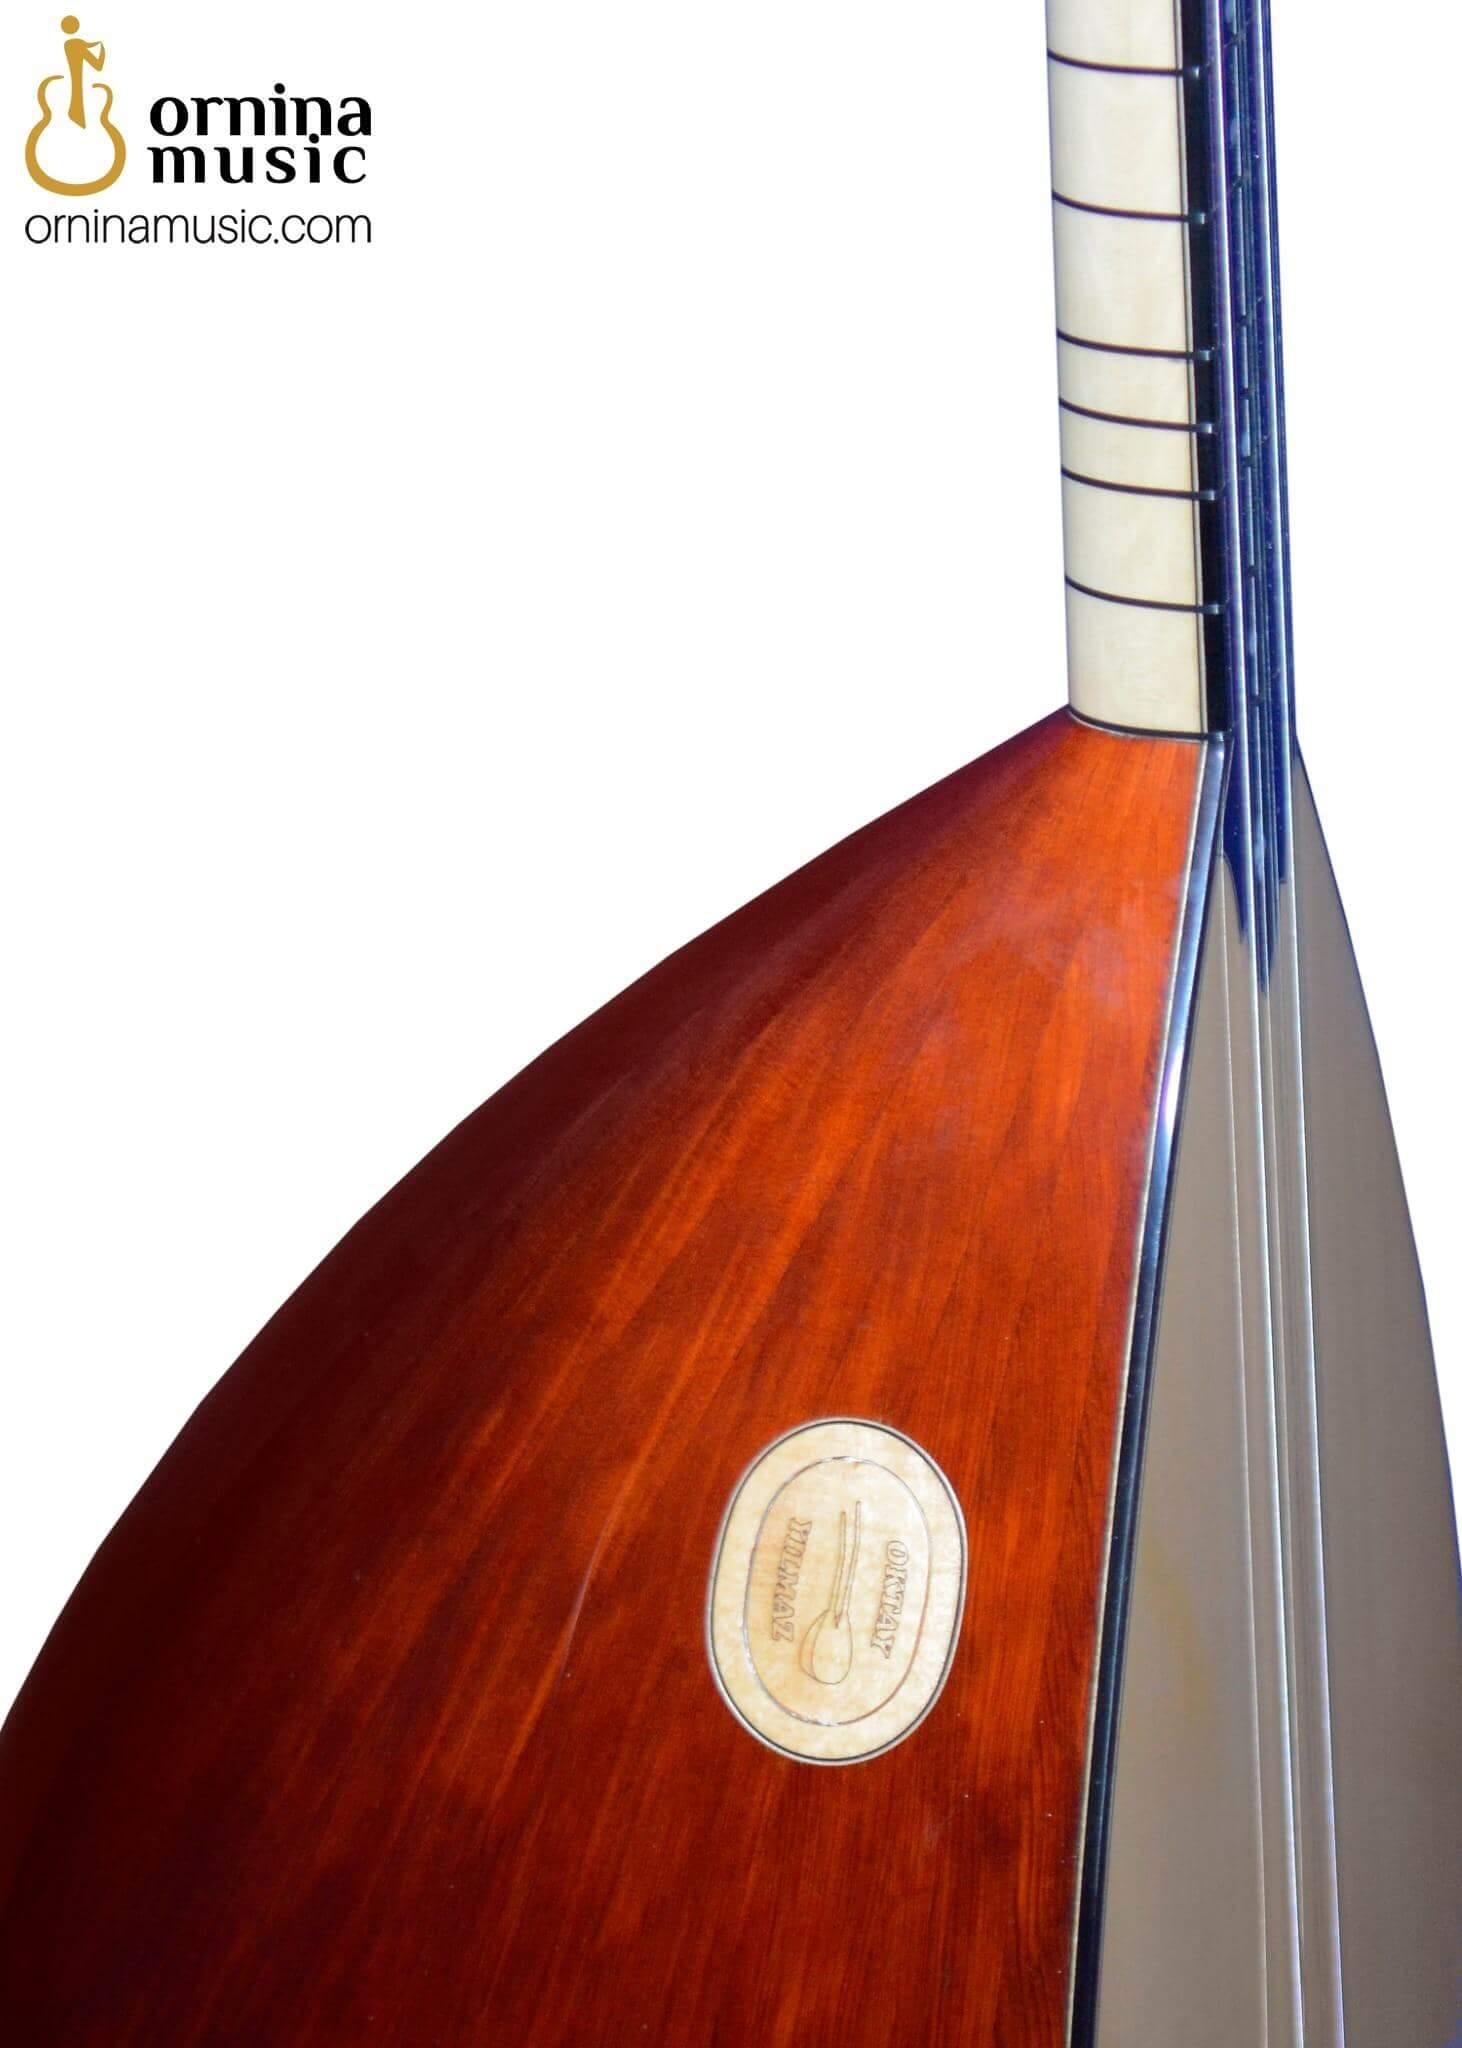 Baglama instrument - Baghlama short neck Saz online